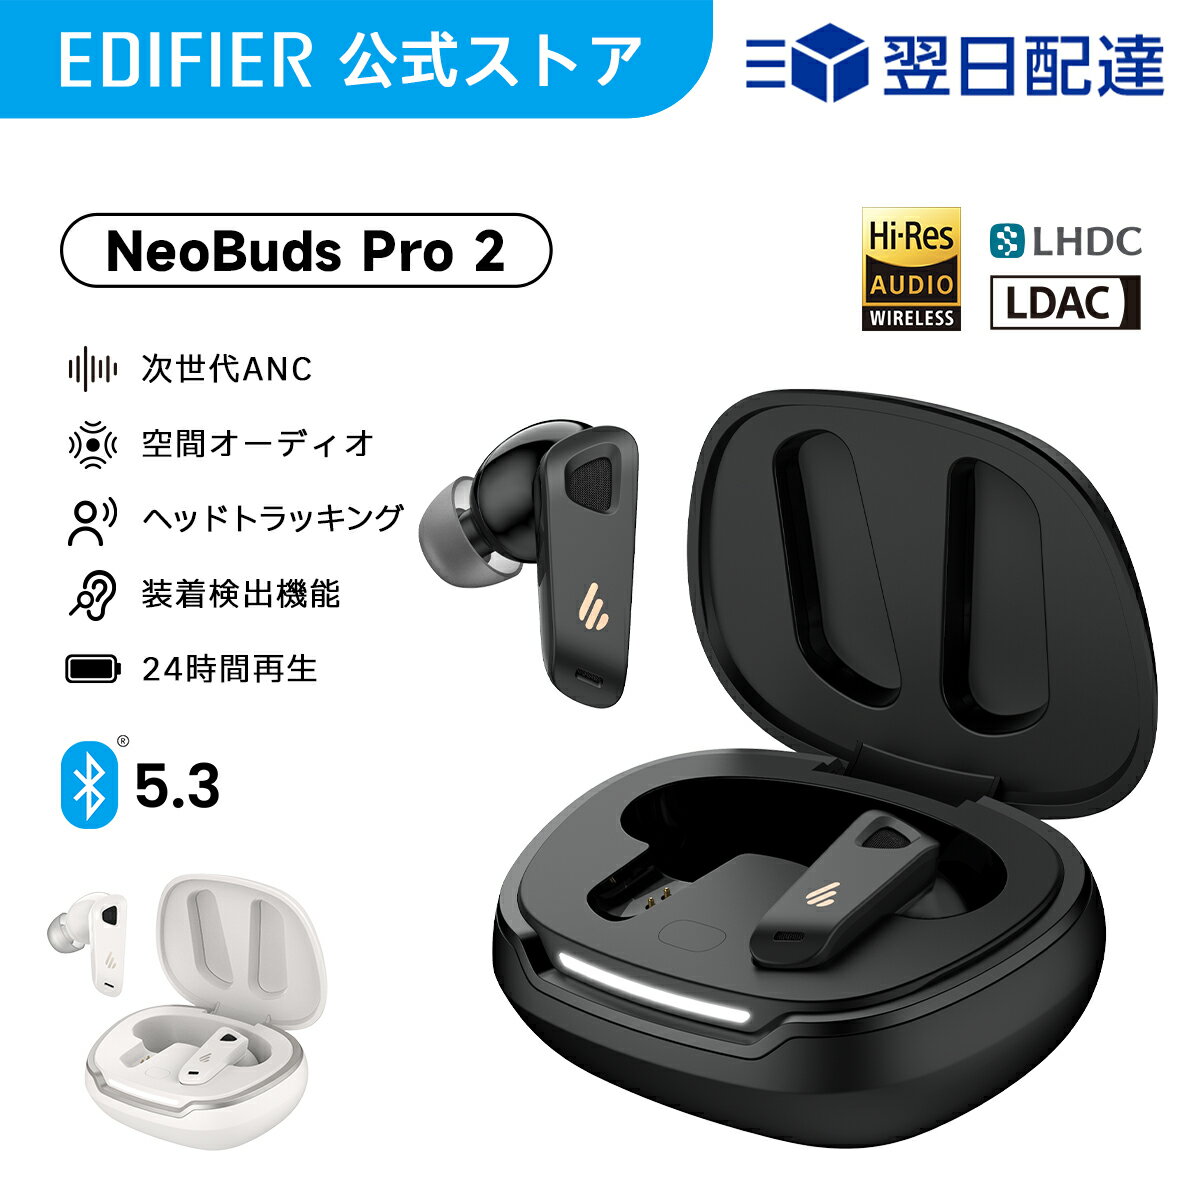 【クーポンで14,990円】EDIFIER NeoBuds Pr